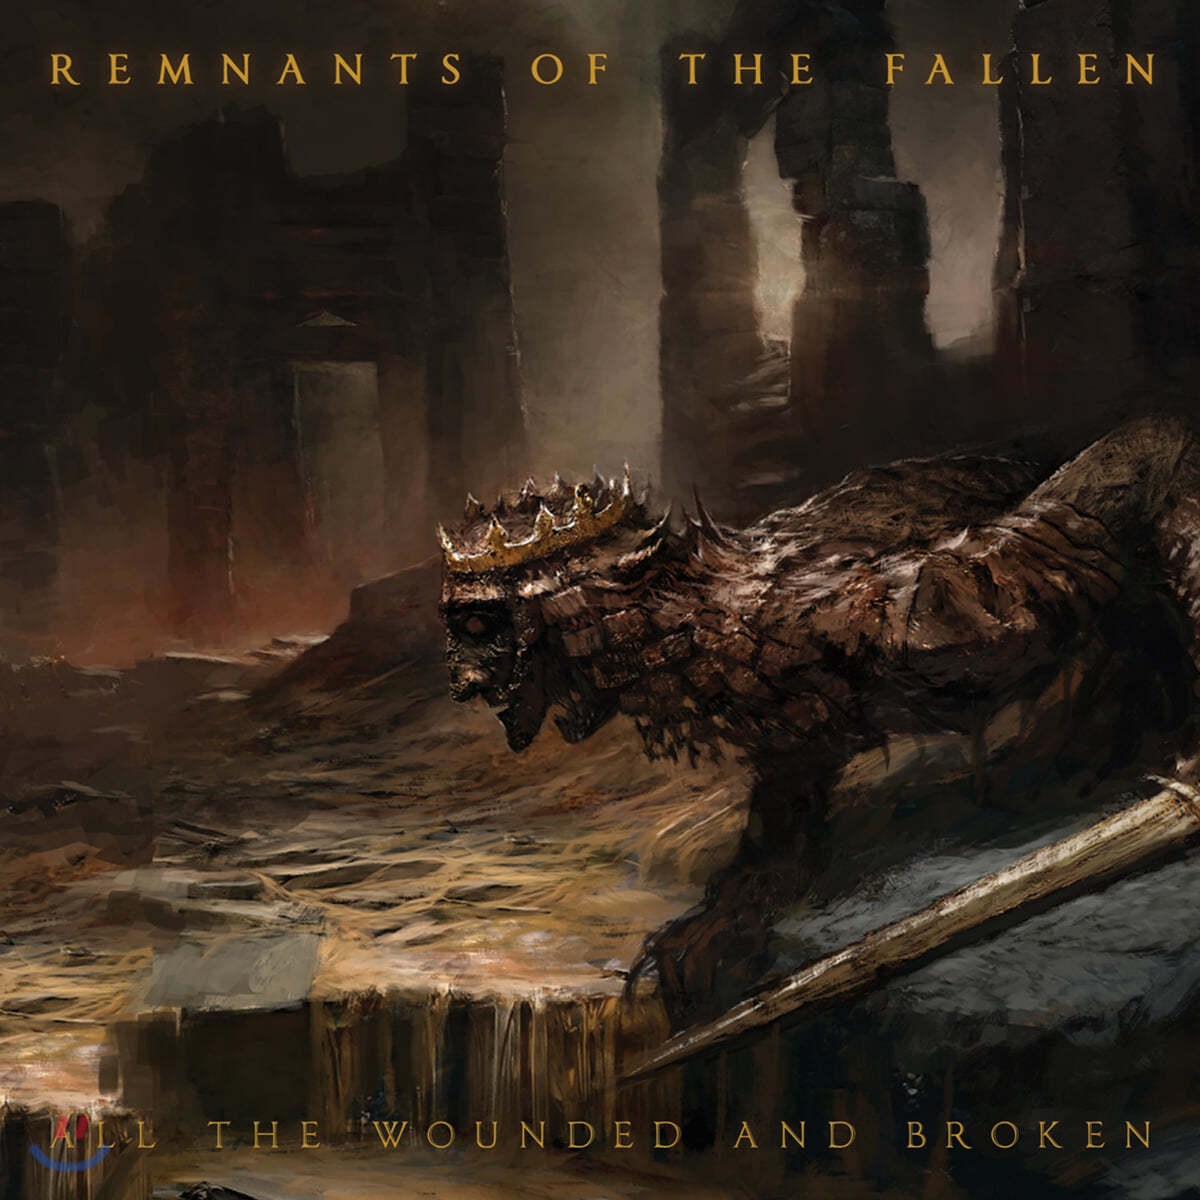 렘넌츠 오브 더 폴른 (Remnants of the Fallen) - All the Wounded and Broken